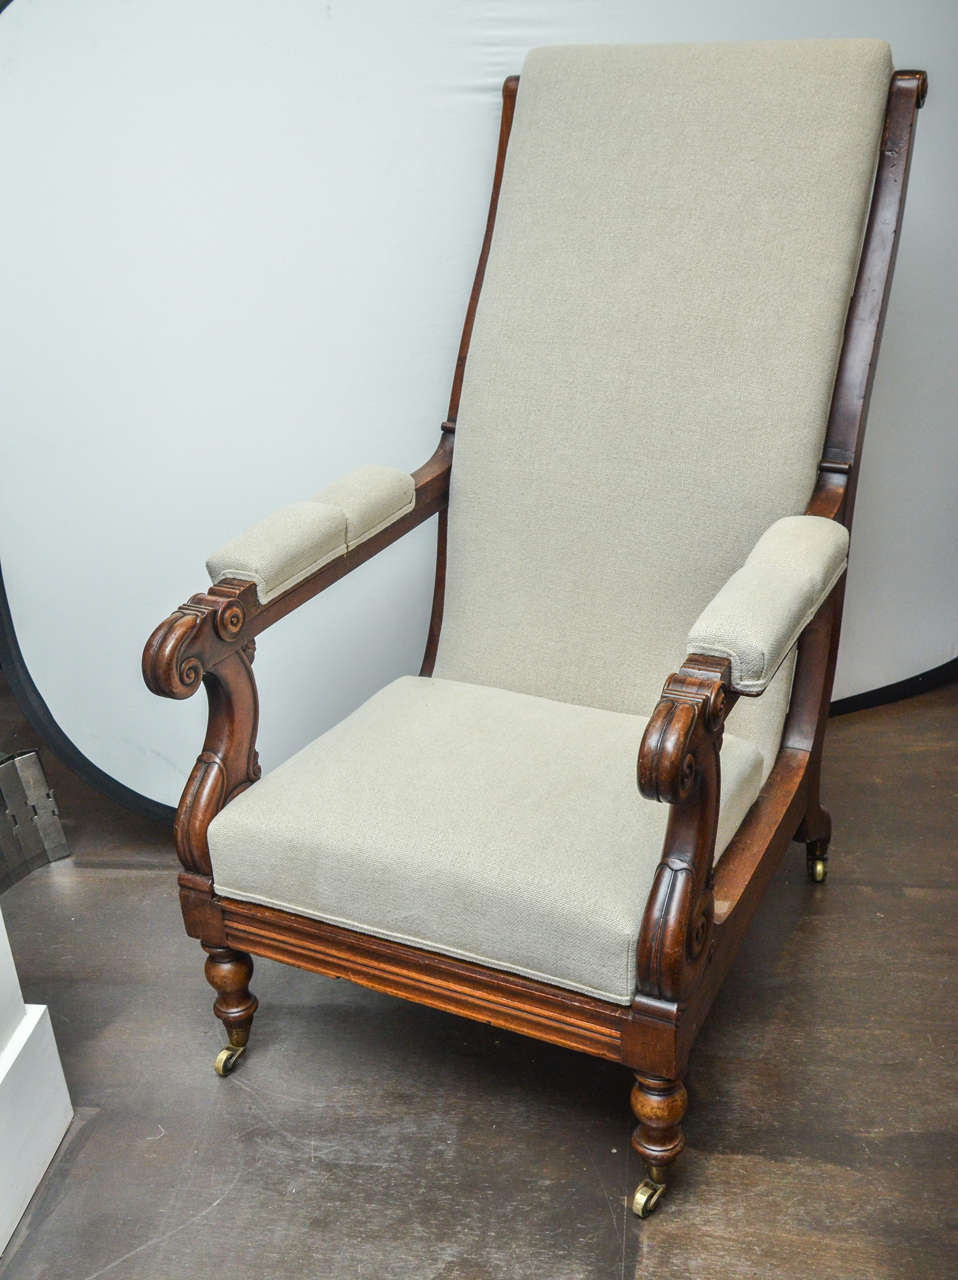 Antiker Mahagoni-Sessel aus der William-IV-Periode des 19. Jahrhunderts

Stabiler Mahagoni-Rahmen, schöne handgeschnitzte Details und Messingrollen. 

Dieser Sessel wurde neu gepolstert und mit einem neutralen beigen Leinenstoff bezogen. 
